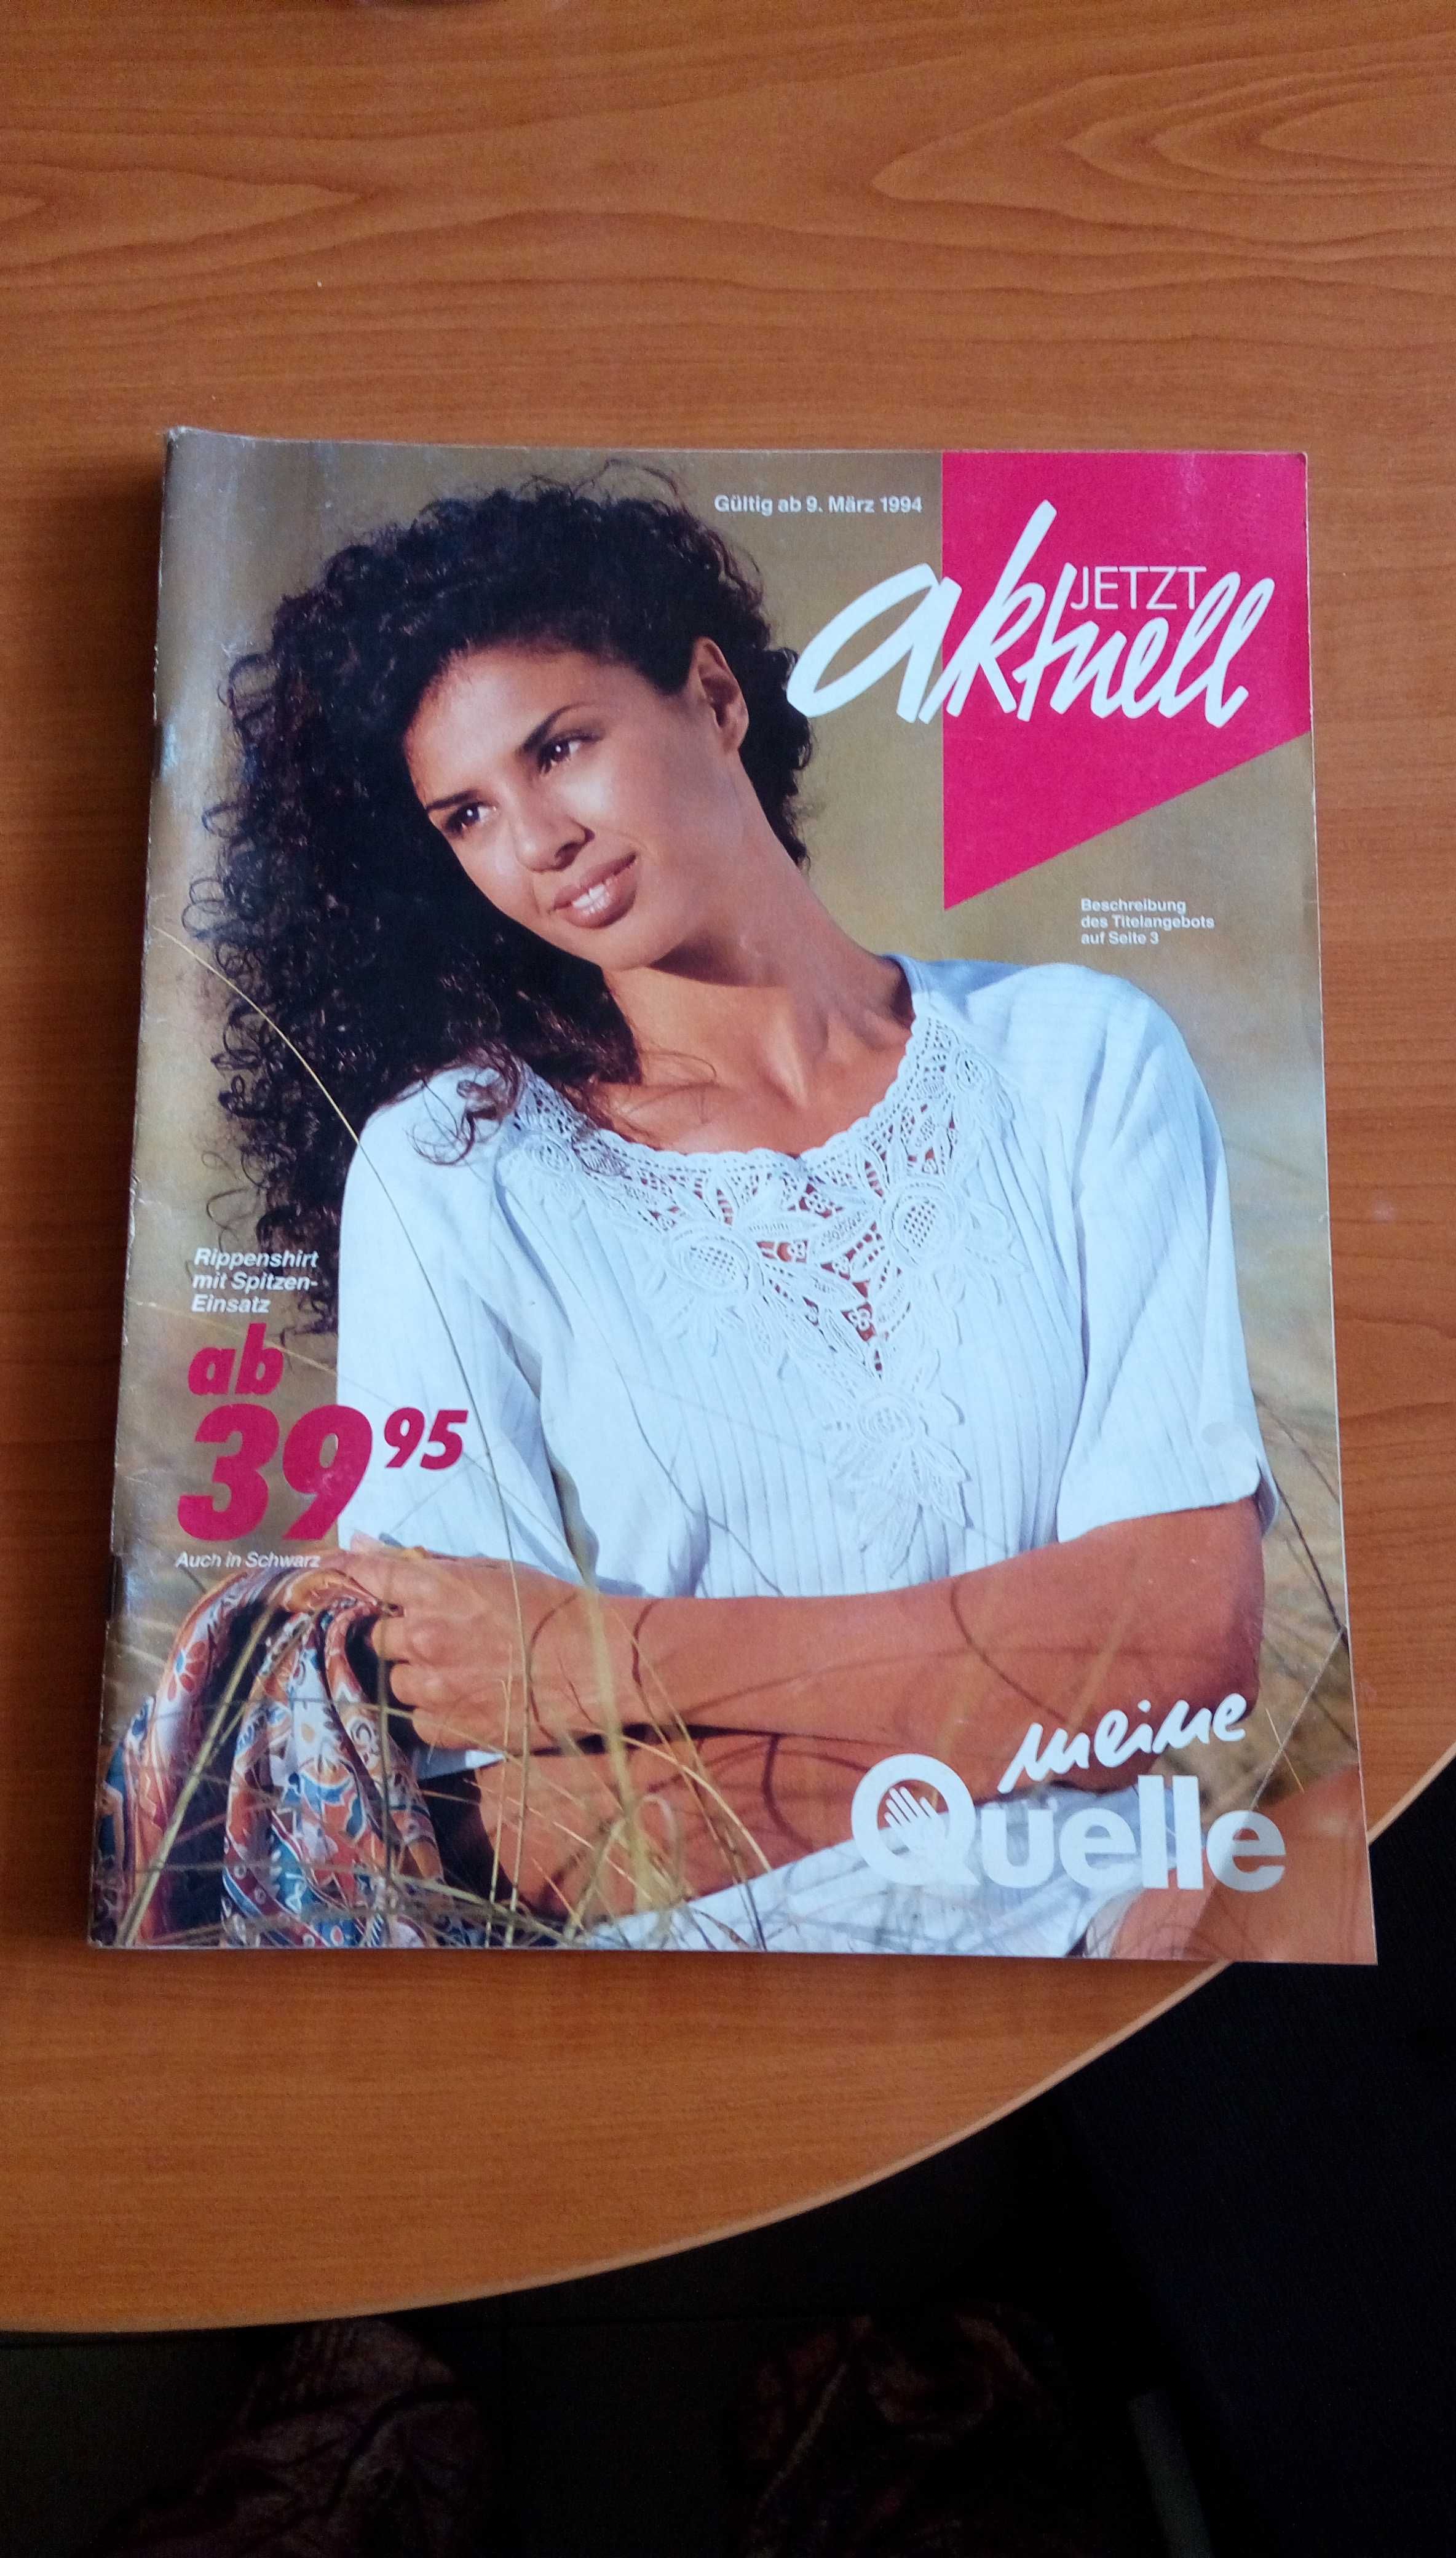 Quelle katalog - jetzt aktuell - marz 1994 /списание на Квеле март 94г